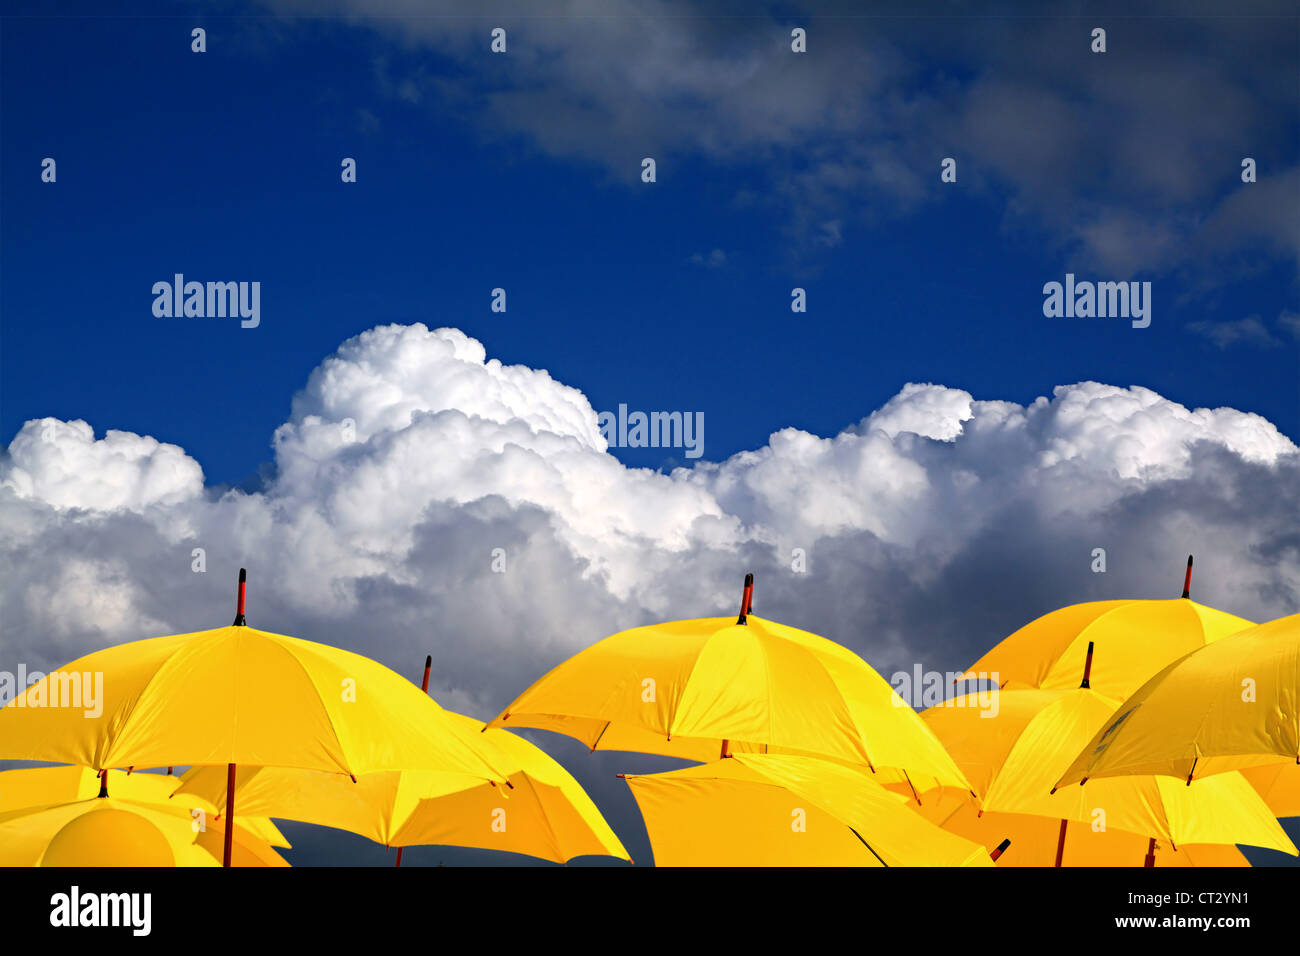 Gli ombrelli di colore giallo su sfondo nuvoloso Foto Stock